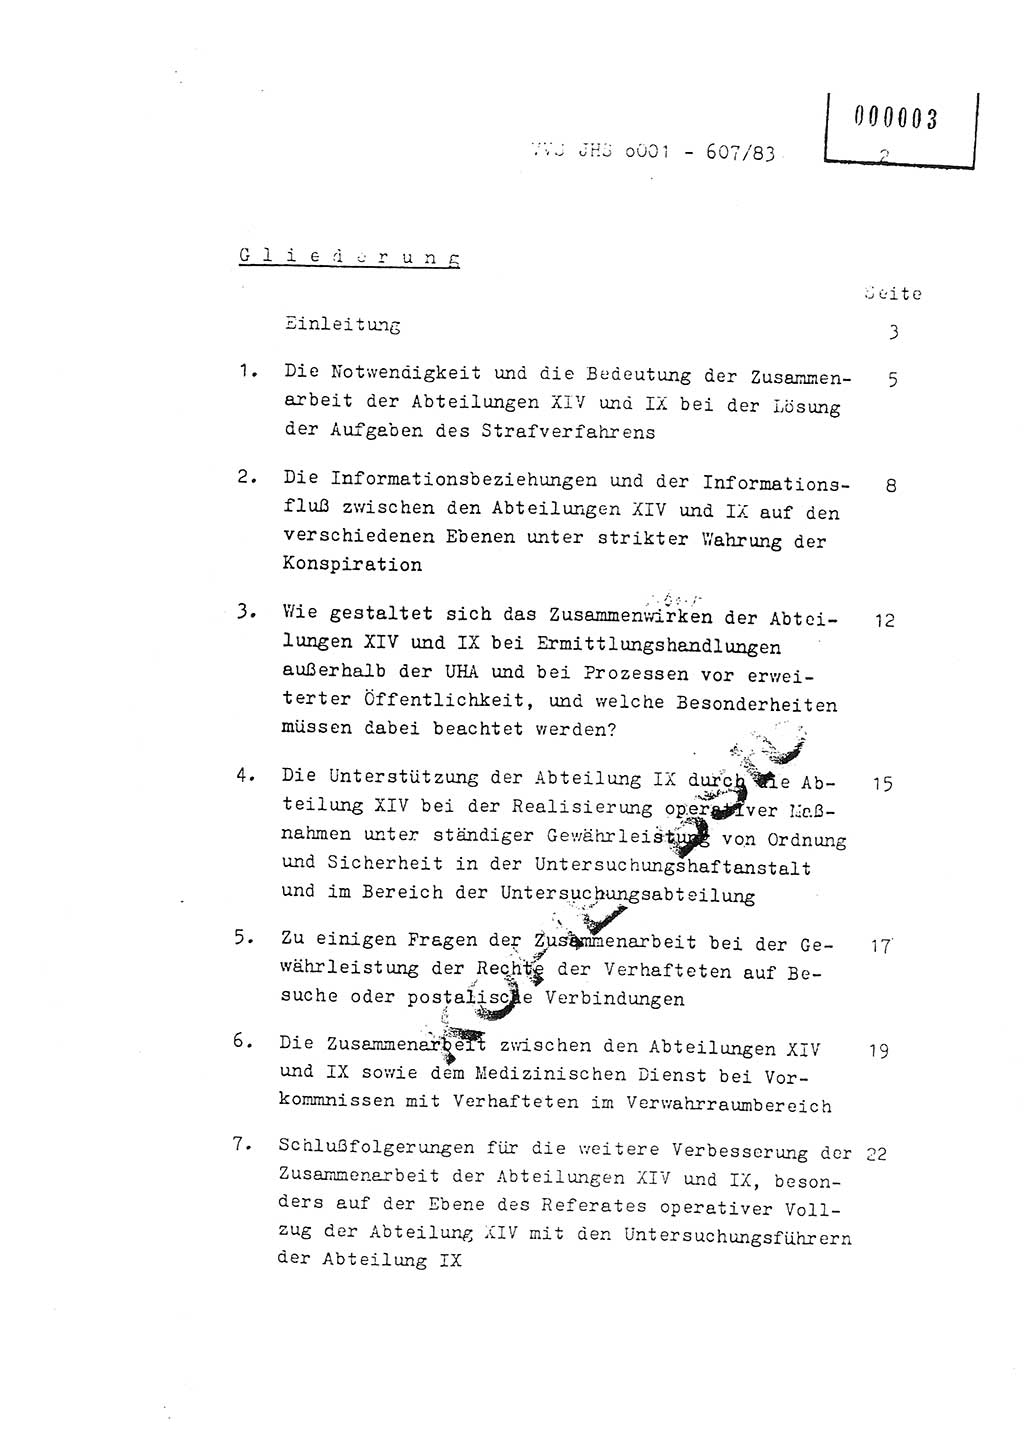 Fachschulabschlußarbeit Oberleutnant Hans-Joachim Saltmann (BV Rostock Abt. ⅩⅣ), Ministerium für Staatssicherheit (MfS) [Deutsche Demokratische Republik (DDR)], Juristische Hochschule (JHS), Vertrauliche Verschlußsache (VVS) o001-607/83, Potsdam 1983, Seite 2 (FS-Abschl.-Arb. MfS DDR JHS VVS o001-607/83 1983, S. 2)